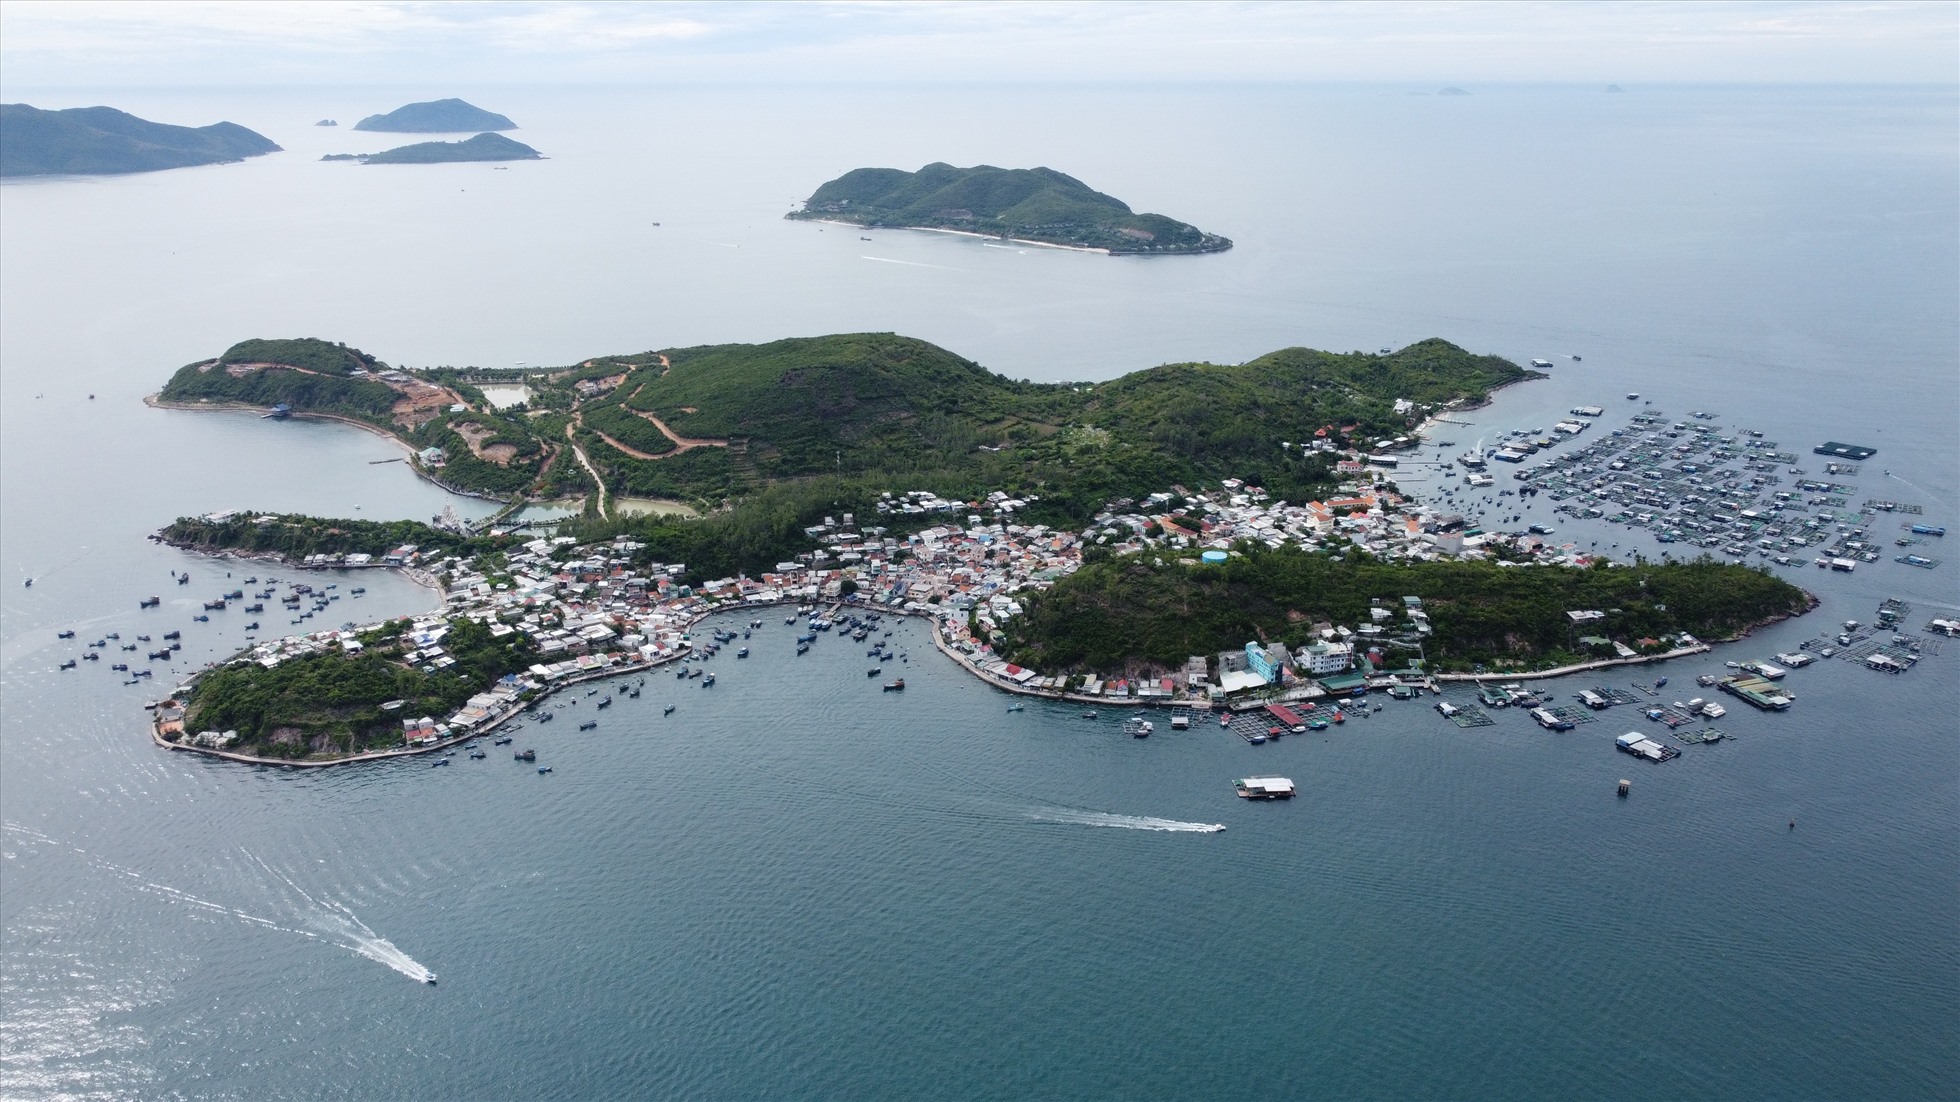 Đảo Hòn Miễu nằm trong vịnh Cù Huân mà ngày nay gọi là Vịnh Nha Trang. Ảnh: Bùi Bùi